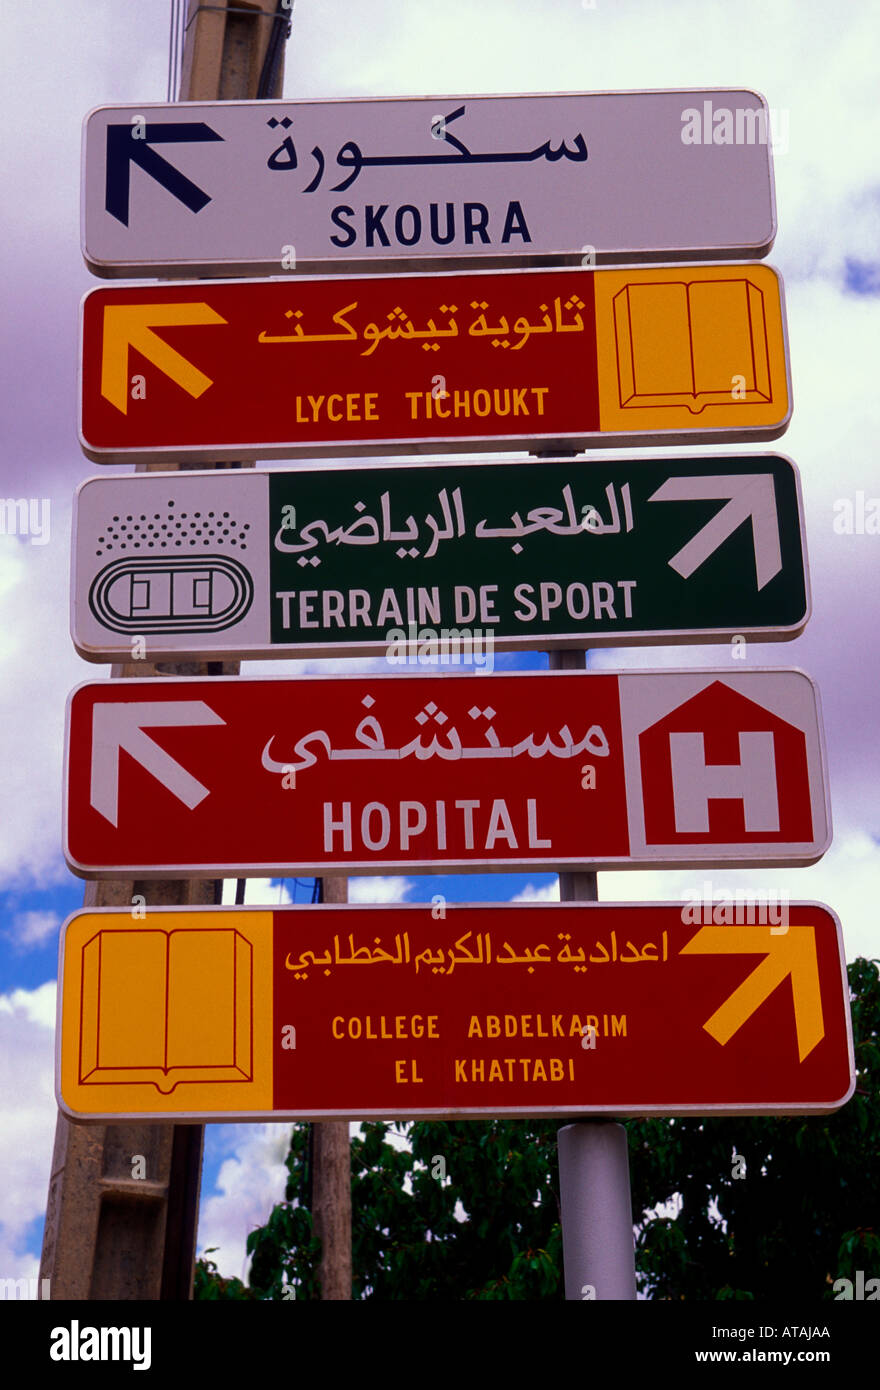 Lingua francese segno, il linguaggio arabo in segno, segno bilingue, segno direzionale, segno di traffico, segno, boulemane, Marocco, Africa settentrionale, Africa Foto Stock